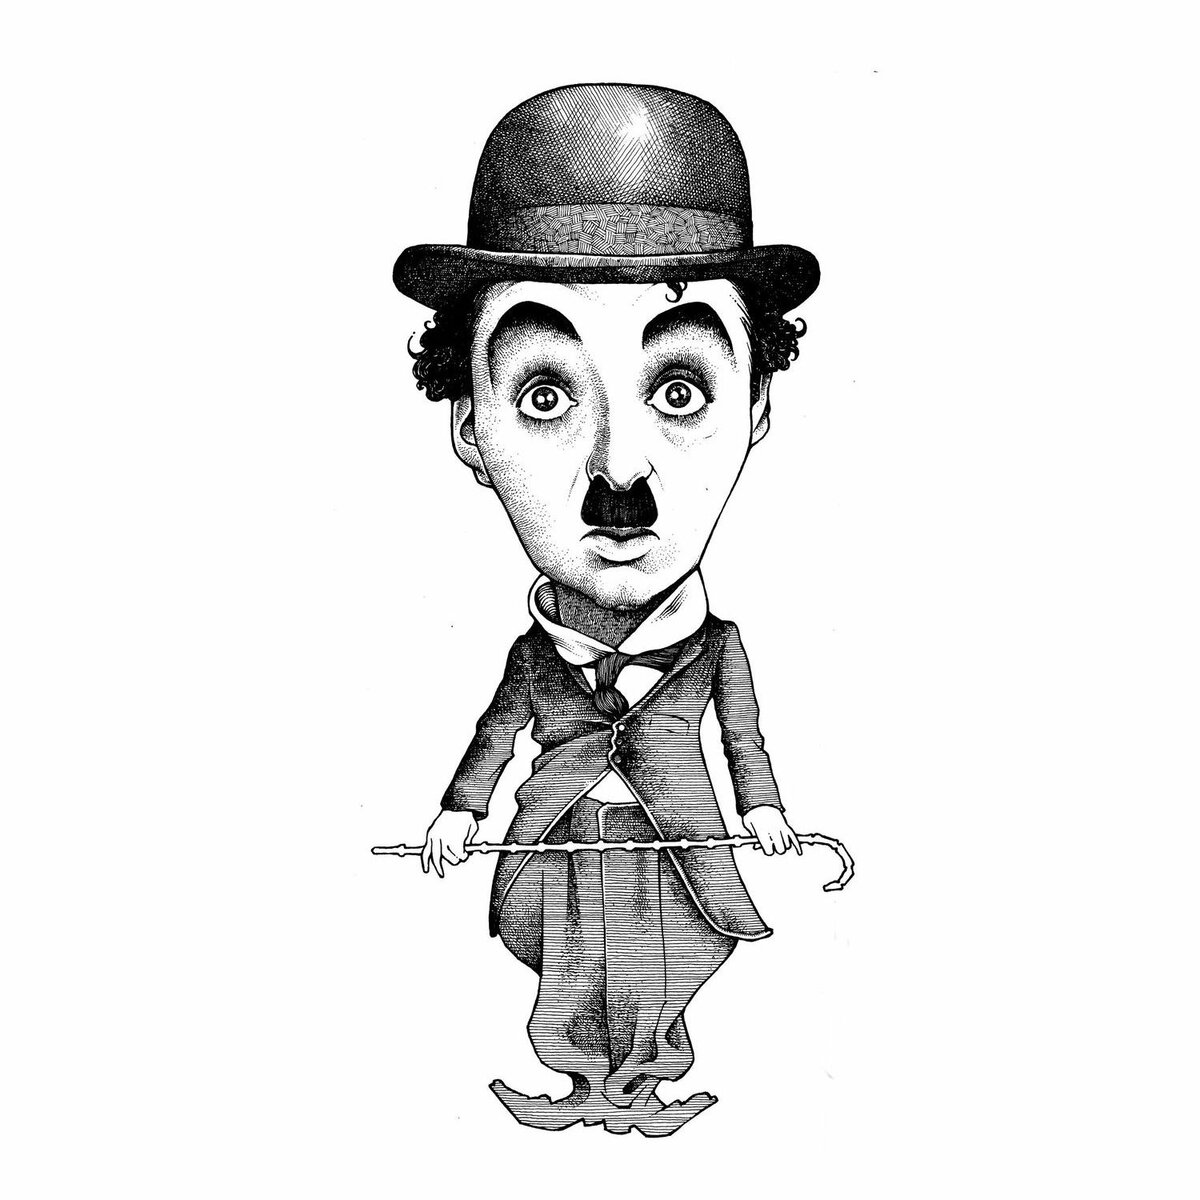 Чаплин: изображения без лицензионных платежей